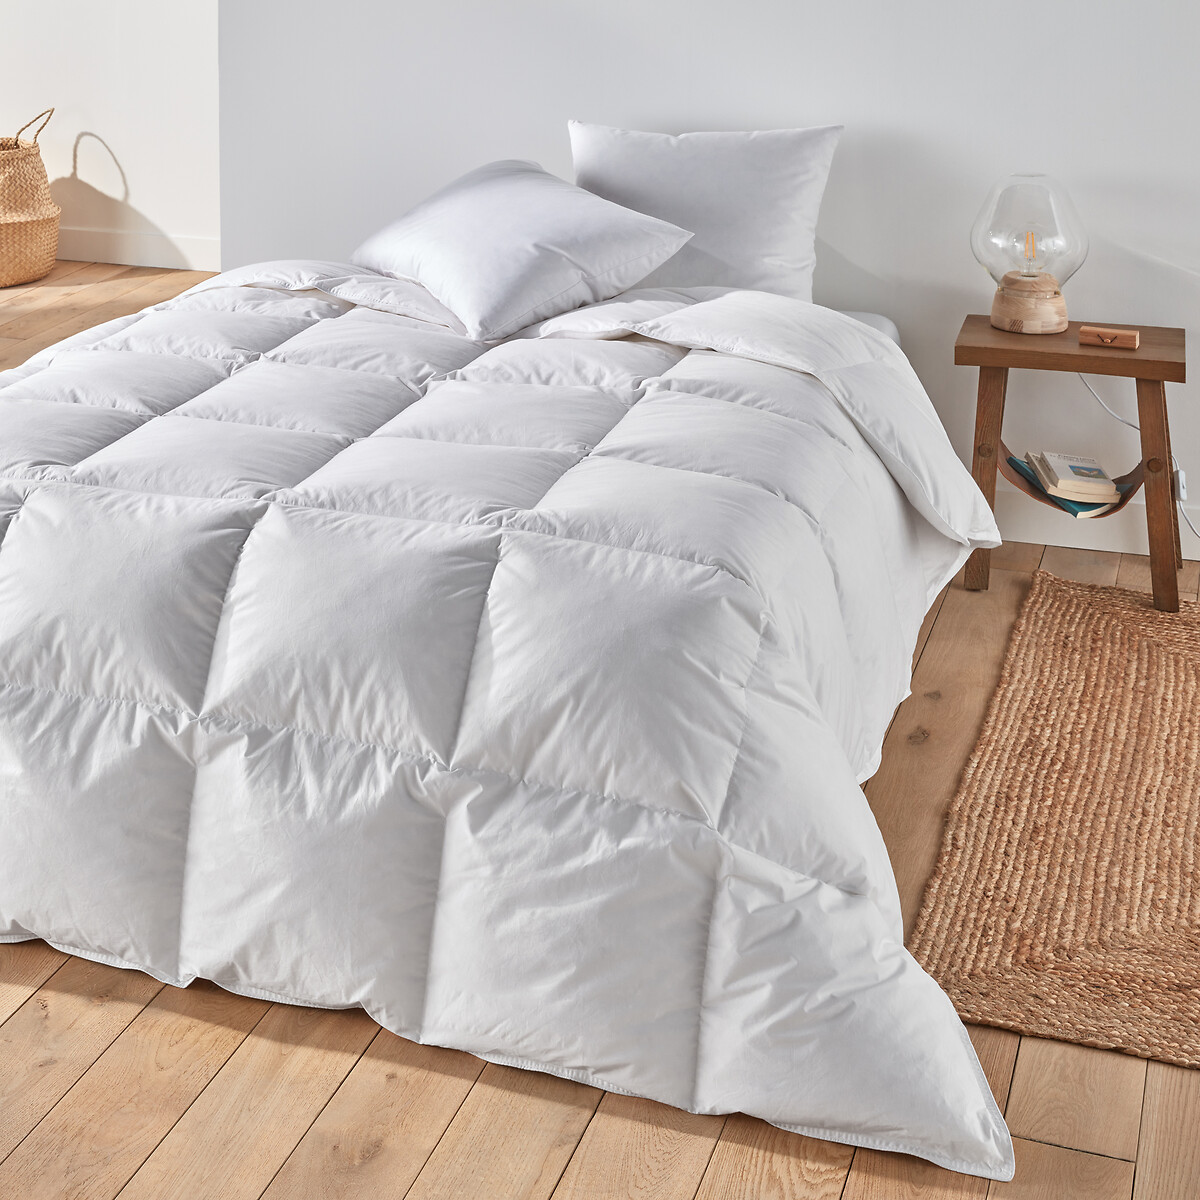 Одеяло La Redoute Натуральное для комфортного сна Теплое  пуха  перьев 140 x 200 см белый, размер 140 x 200 см - фото 1